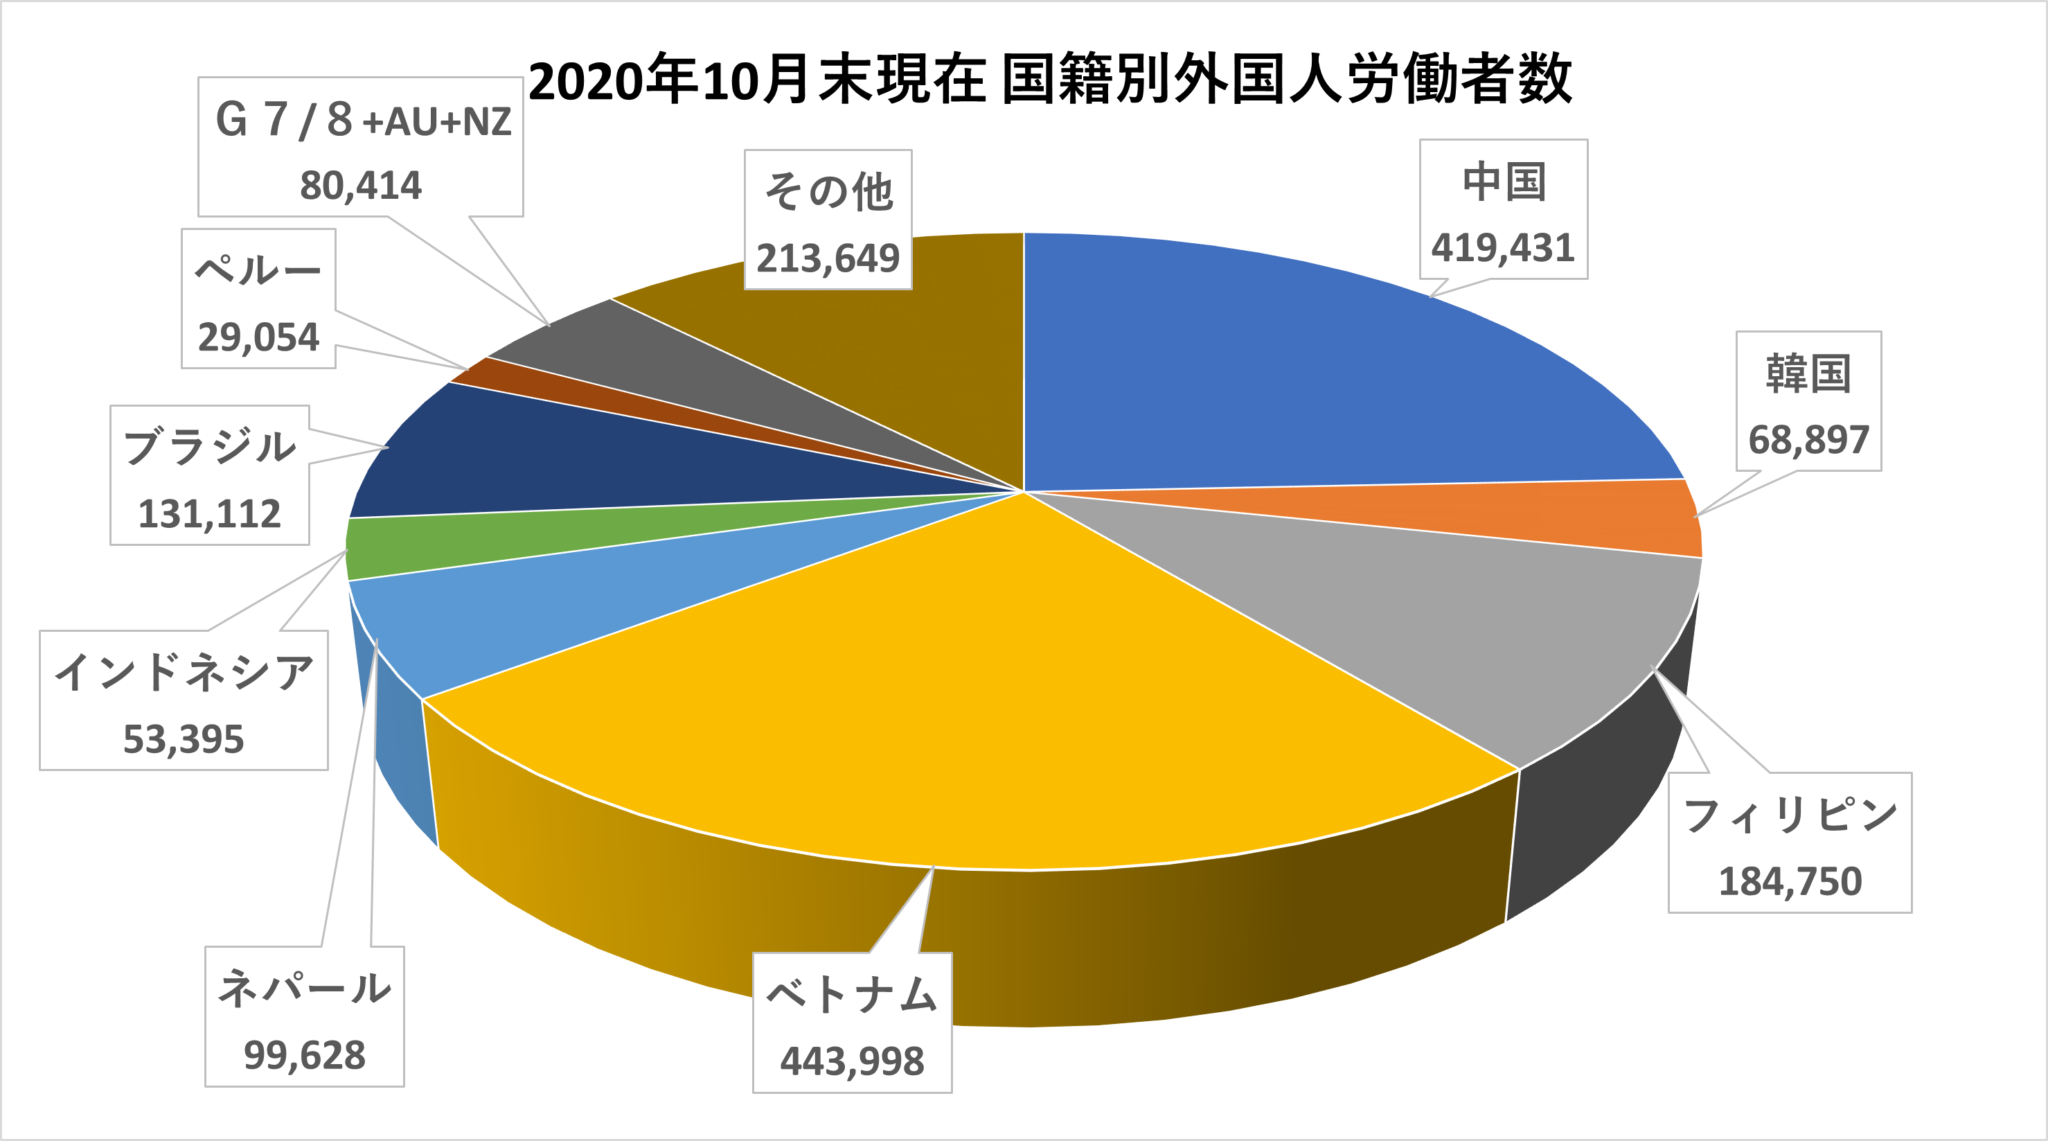 日本で働いている外国人の人数は？2021年1月29日公表　2020年10月末時点での外国人雇用状況